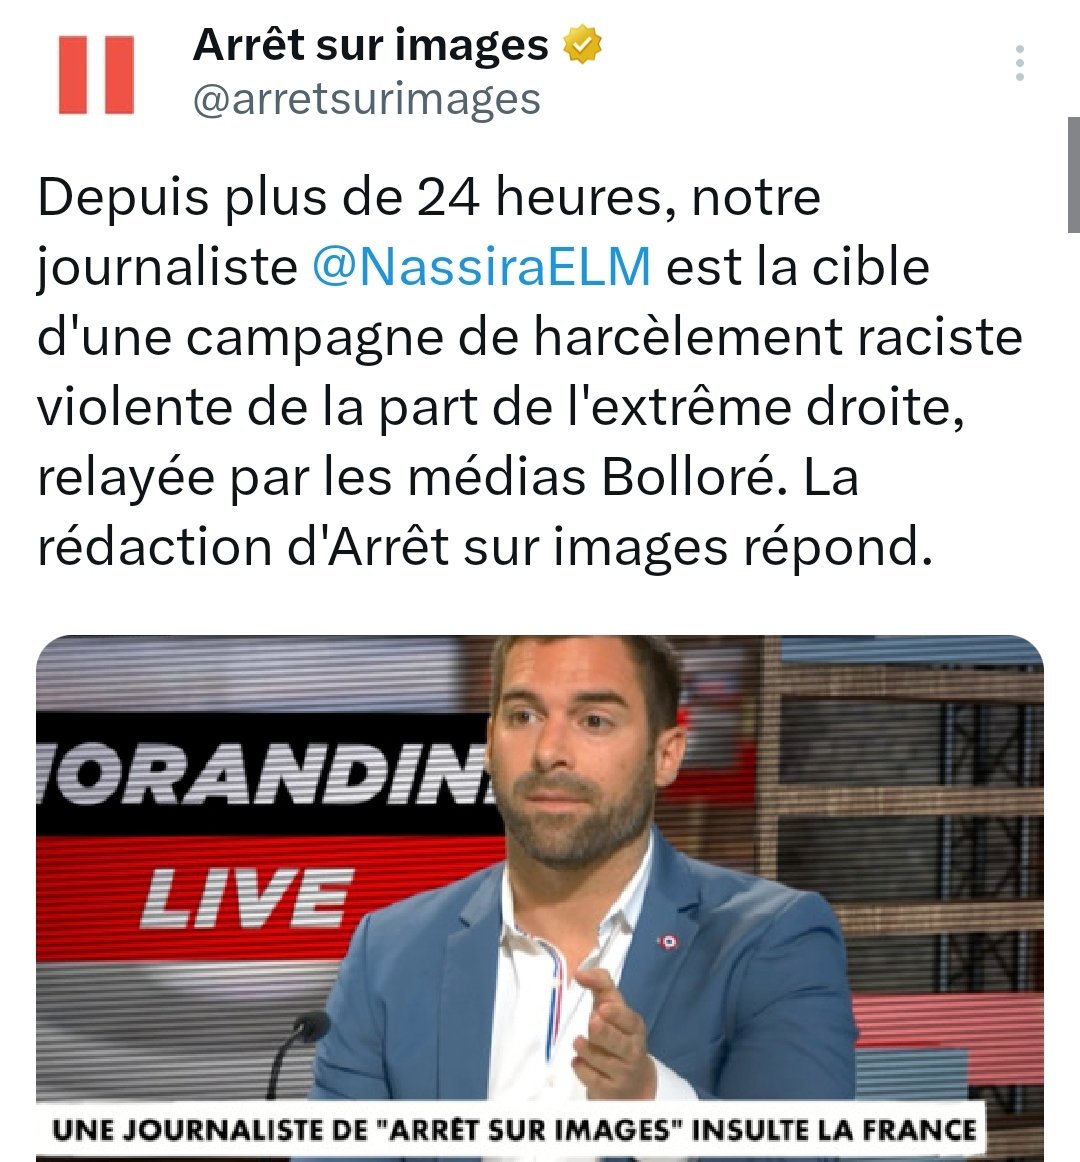 La France est tellement raciste que si tu oses le dire, des milliers de racistes te harcèlent, jusqu'aux médias racistes qui consacrent des heures d'antenne et des articles pour te lyncher en place publique, dans une violence intrinsèque à la droite raciste

Soutien @NassiraELM !